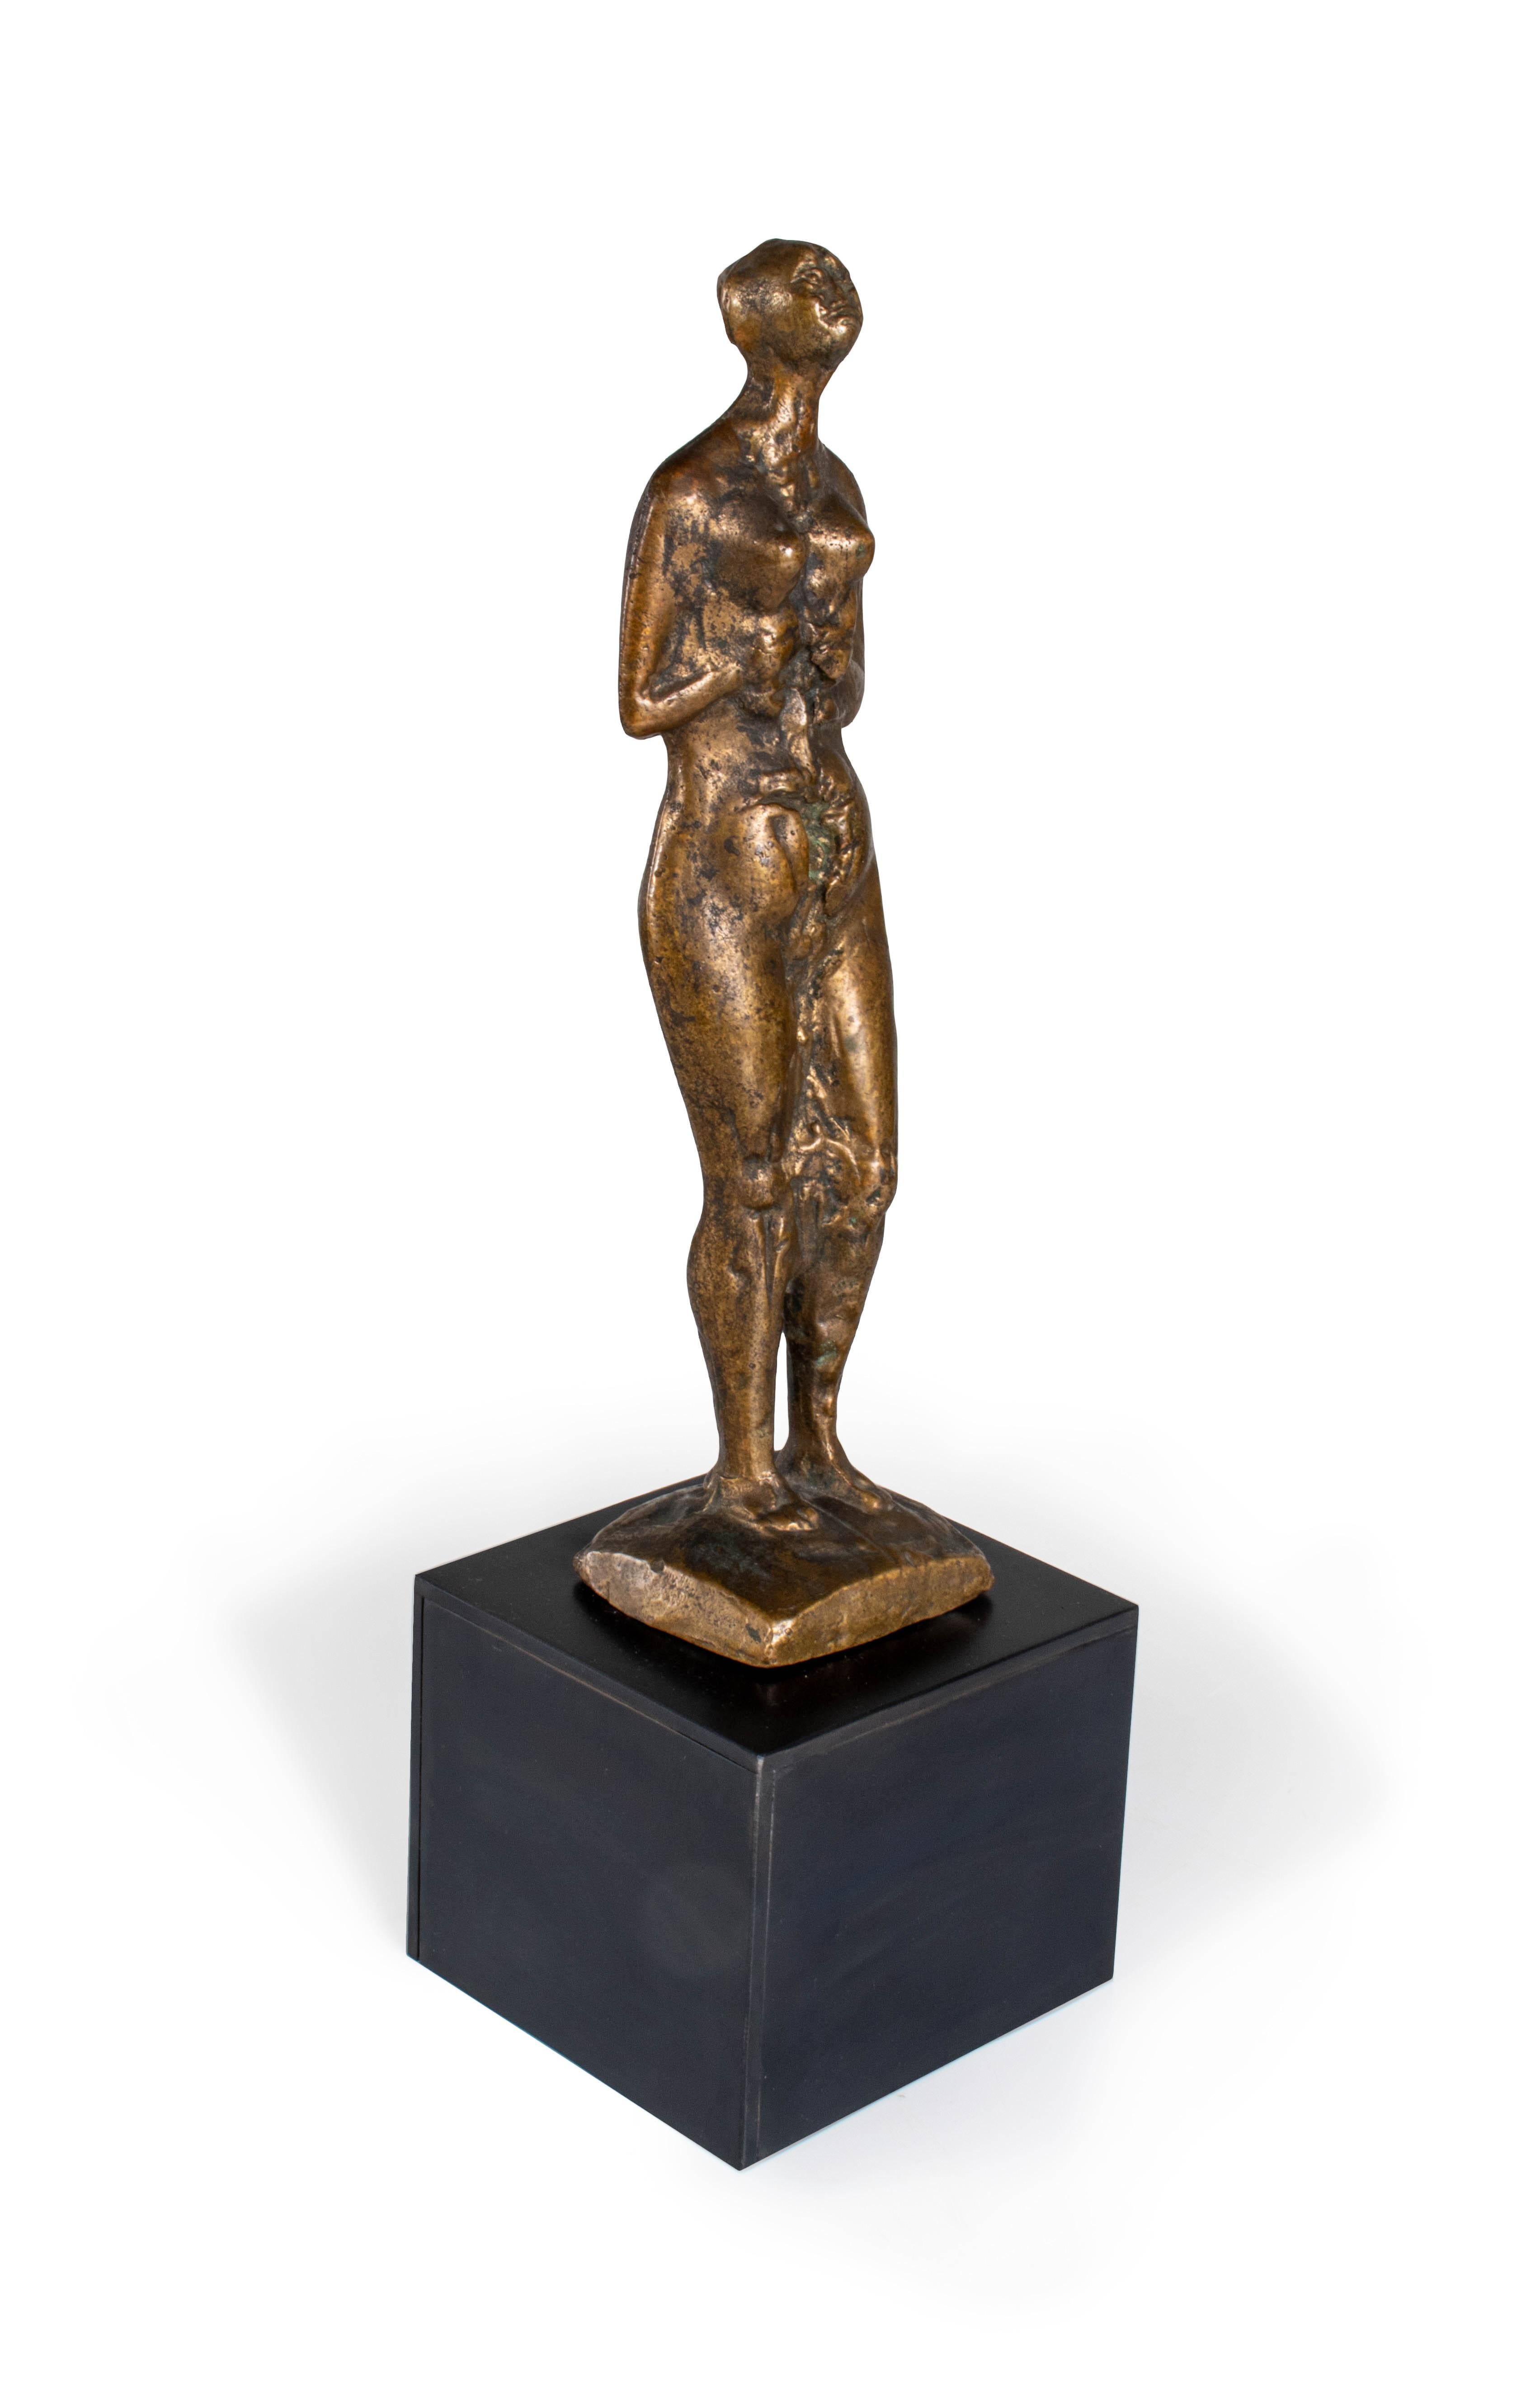 Die Statue ist aus Bronze und stellt eine nackte weibliche Figur dar. Es ist ein wunderschönes Wohnaccessoire, das jede zeitgenössische oder vintage-inspirierte Ästhetik ergänzen würde. Diese Statue eignet sich perfekt, um jeder Wohnungseinrichtung